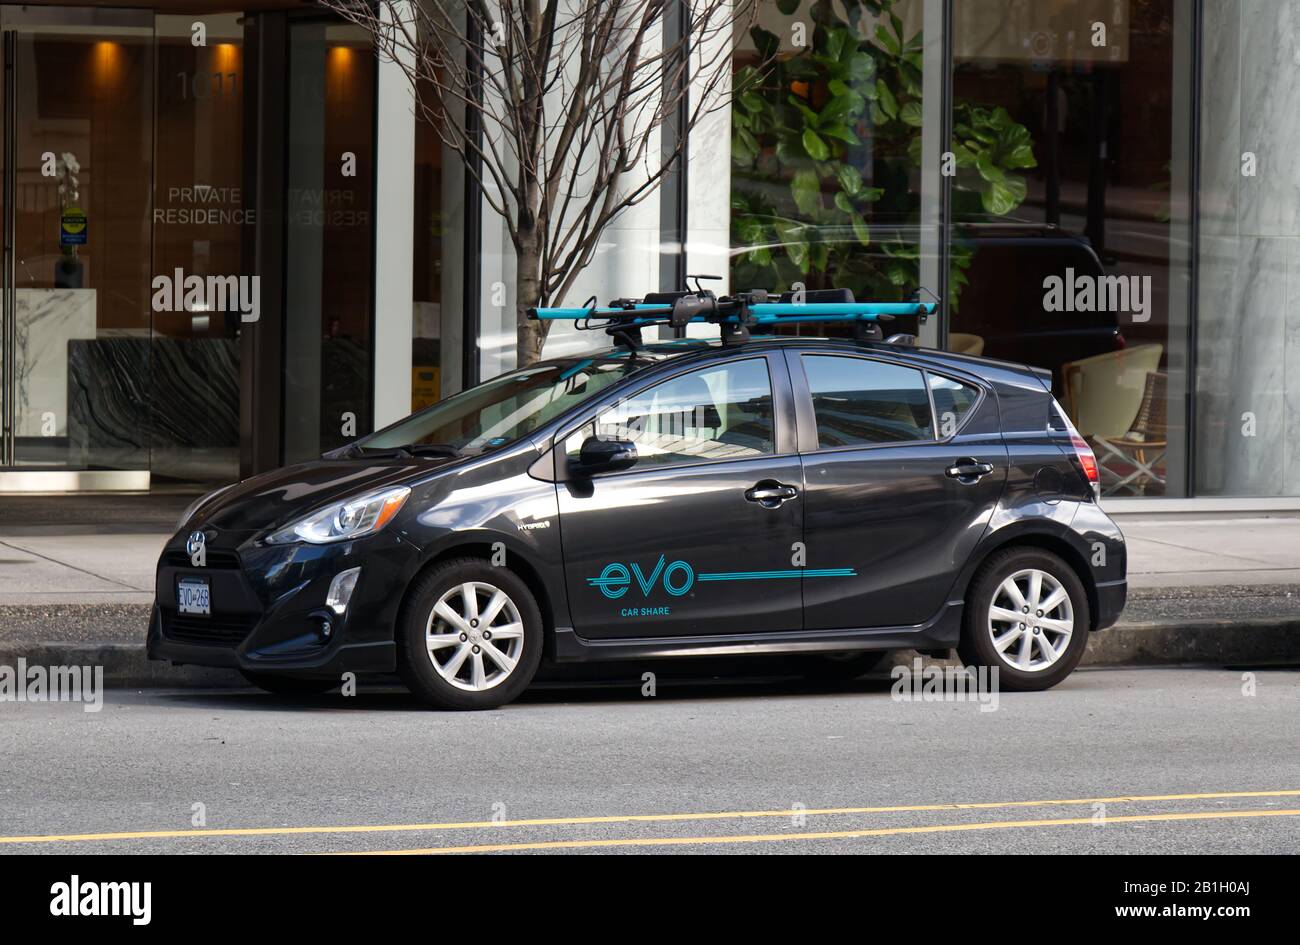 Vancouver, Kanada - 17. Februar 2020: Blick auf das beliebte Auto Share Vehicle "Evo" in der Innenstadt von Vancouver Stockfoto